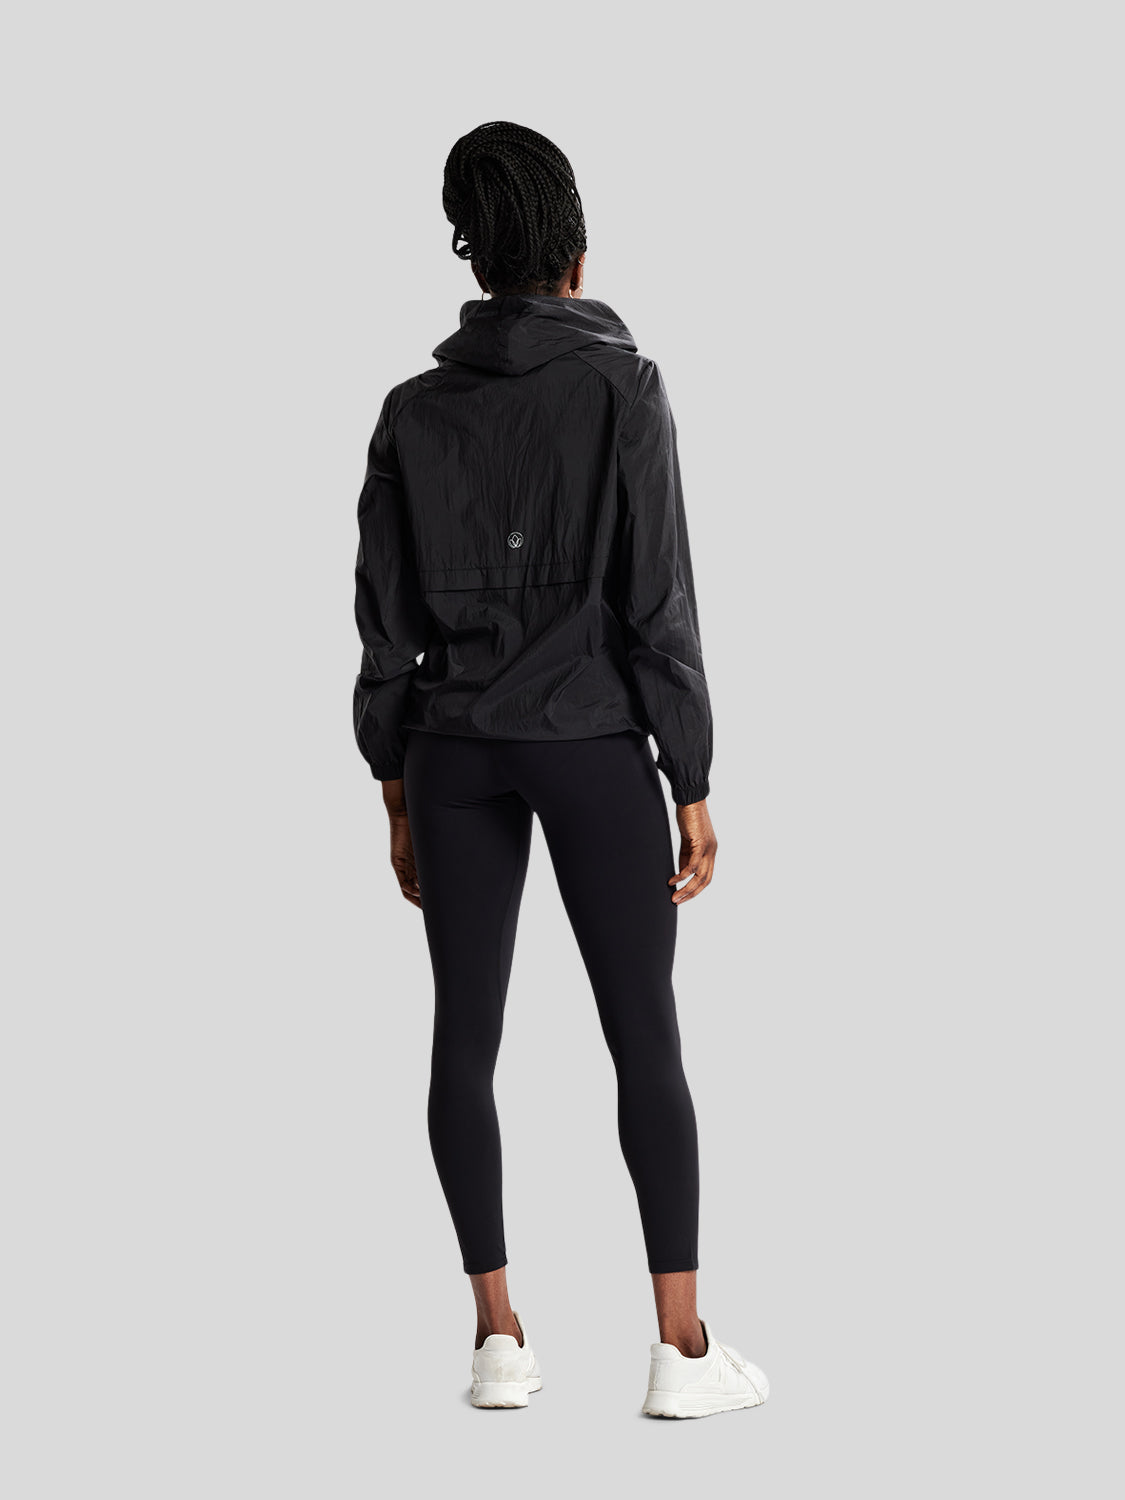 kvinde i fuld figur bagfra med sort træningsjakke